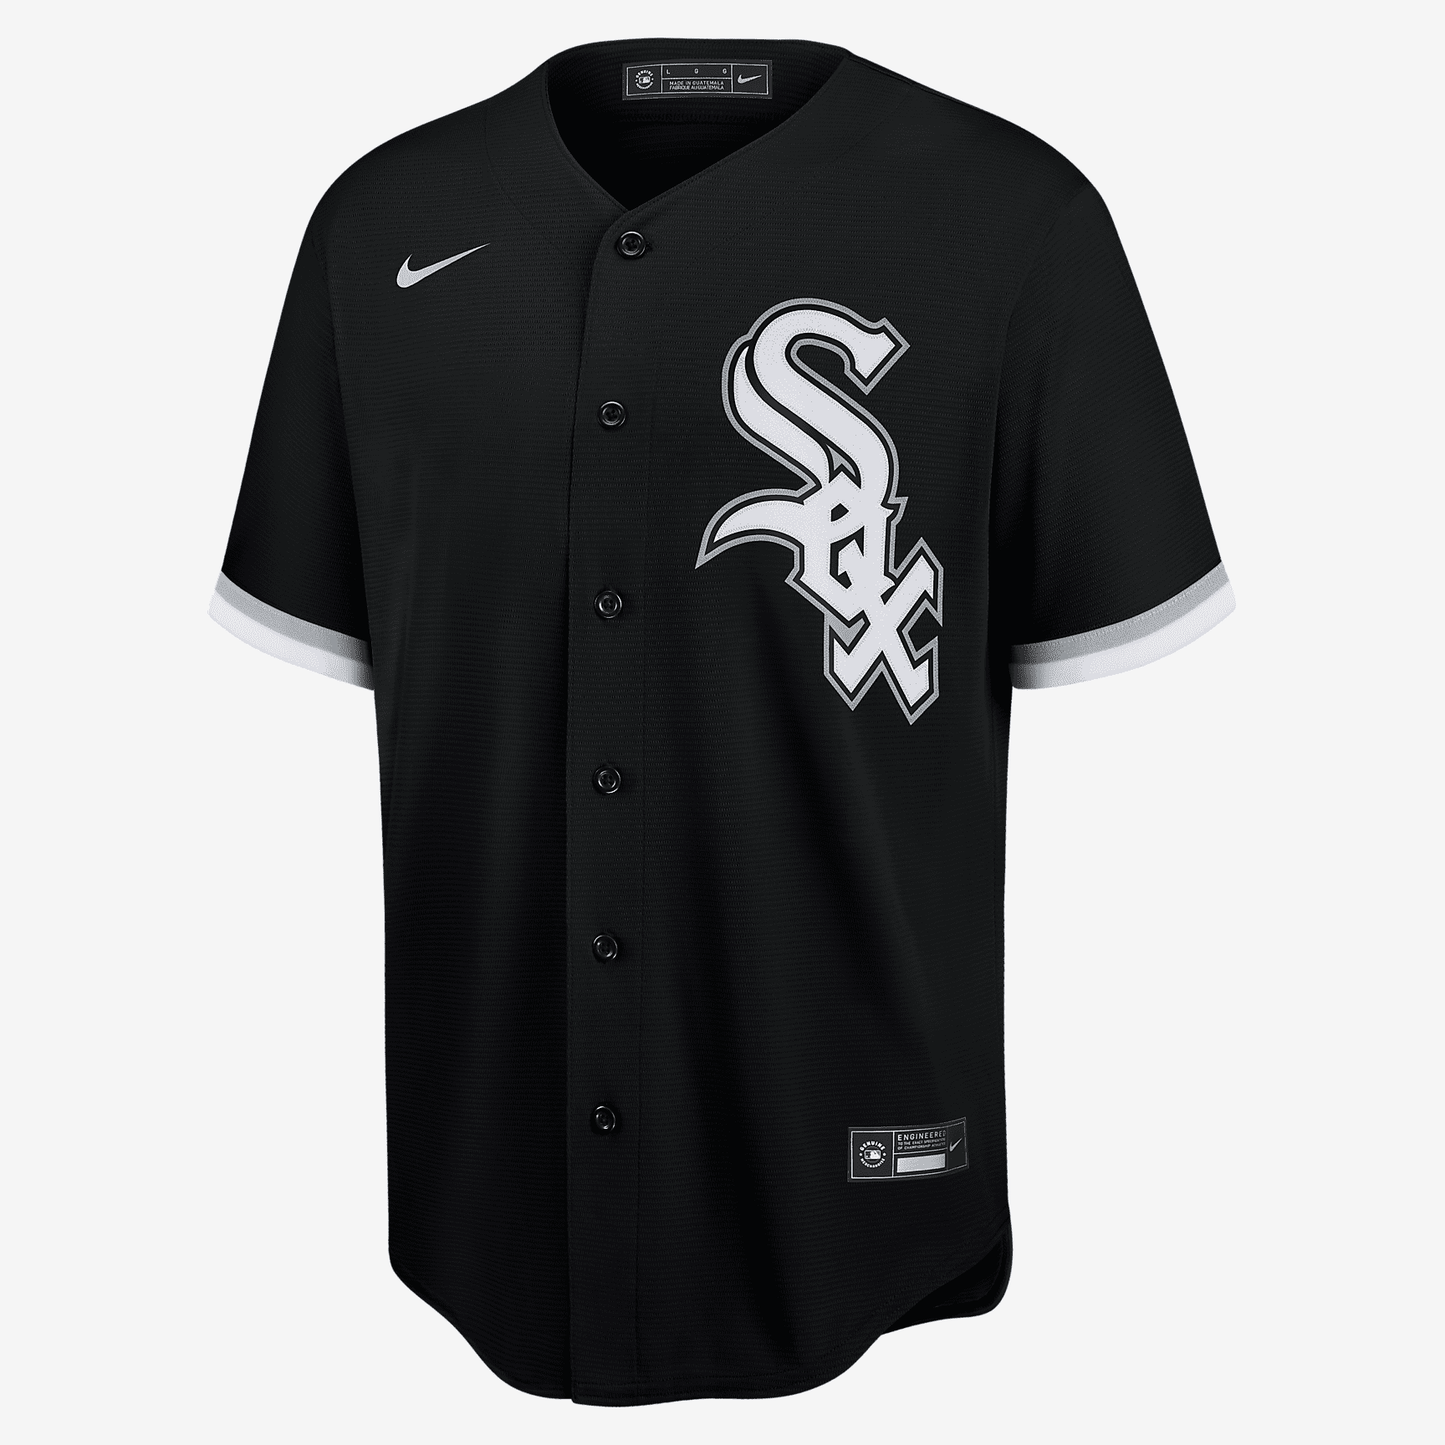 MLB Chicago White Sox (Eloy Jimnez) Men's Replica Baseball Jersey - Black/White